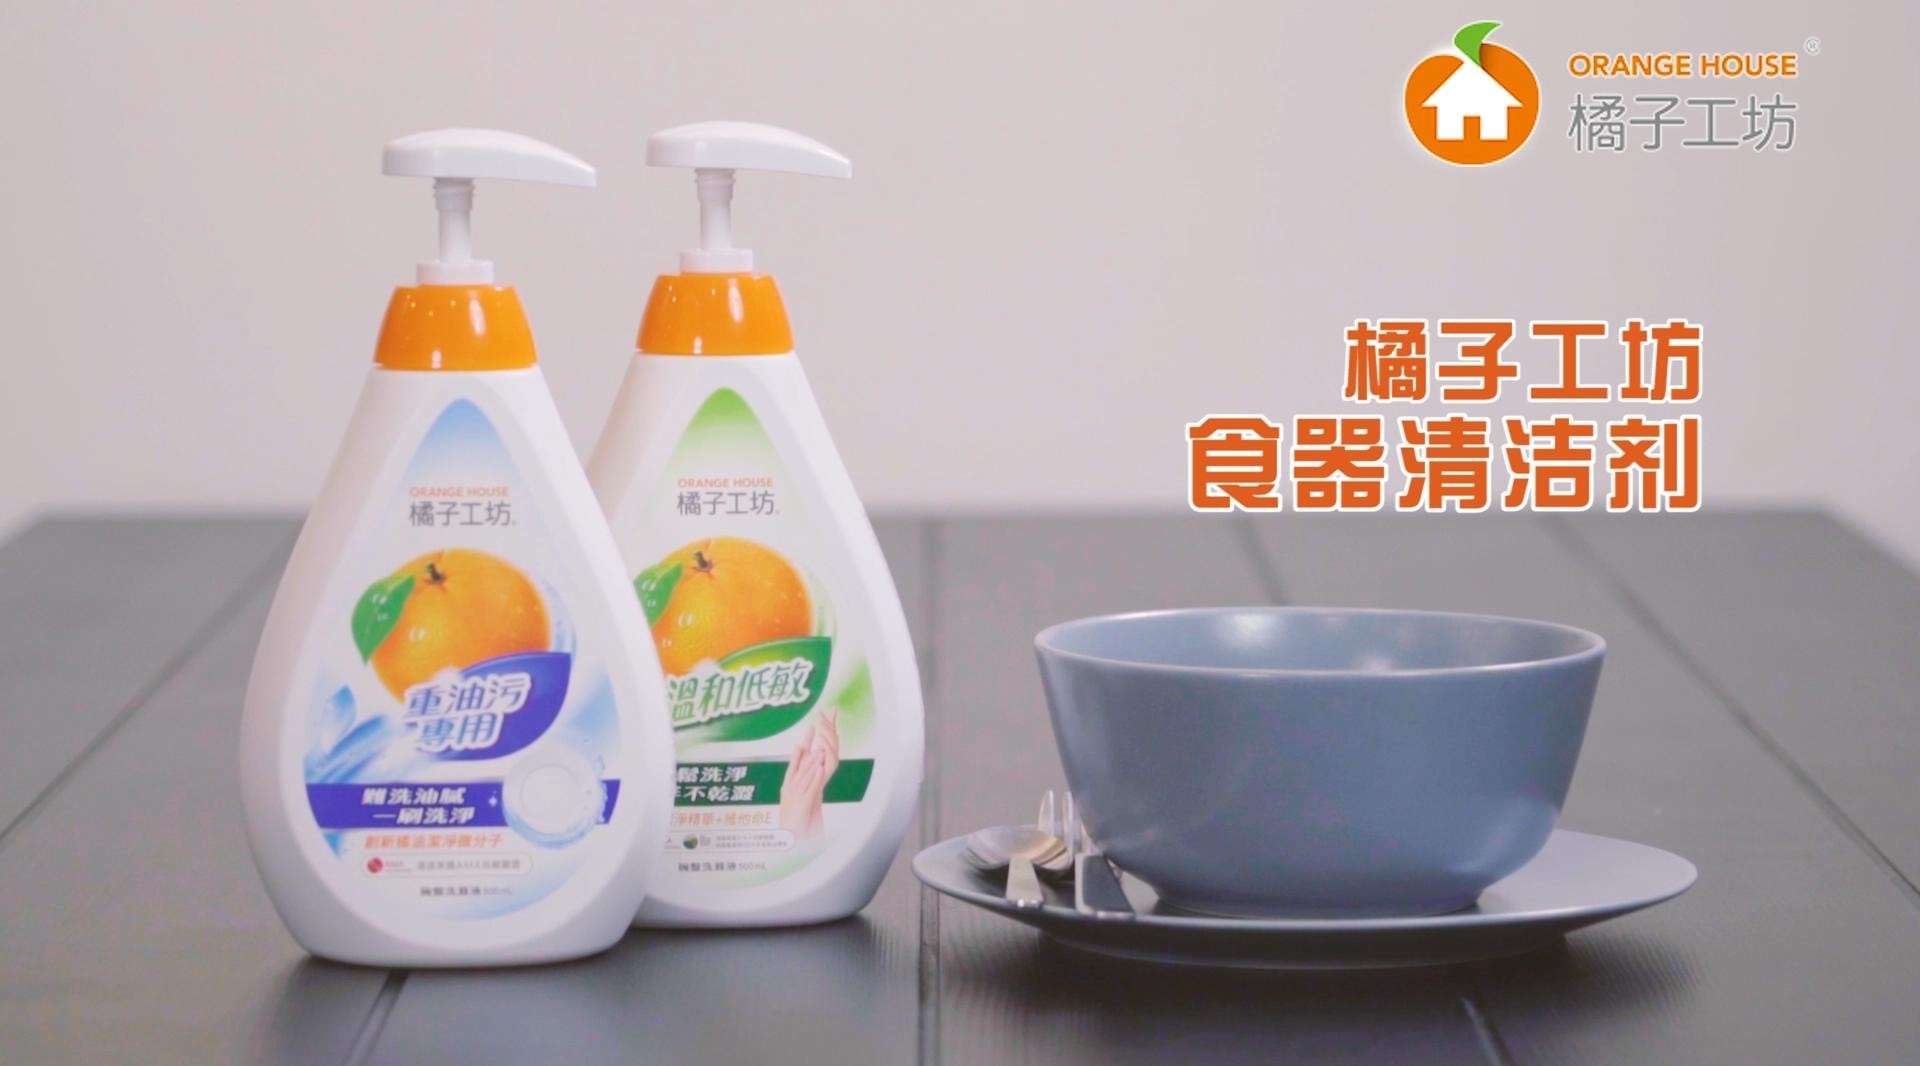 【电商短视频】橘子工坊洗洁精